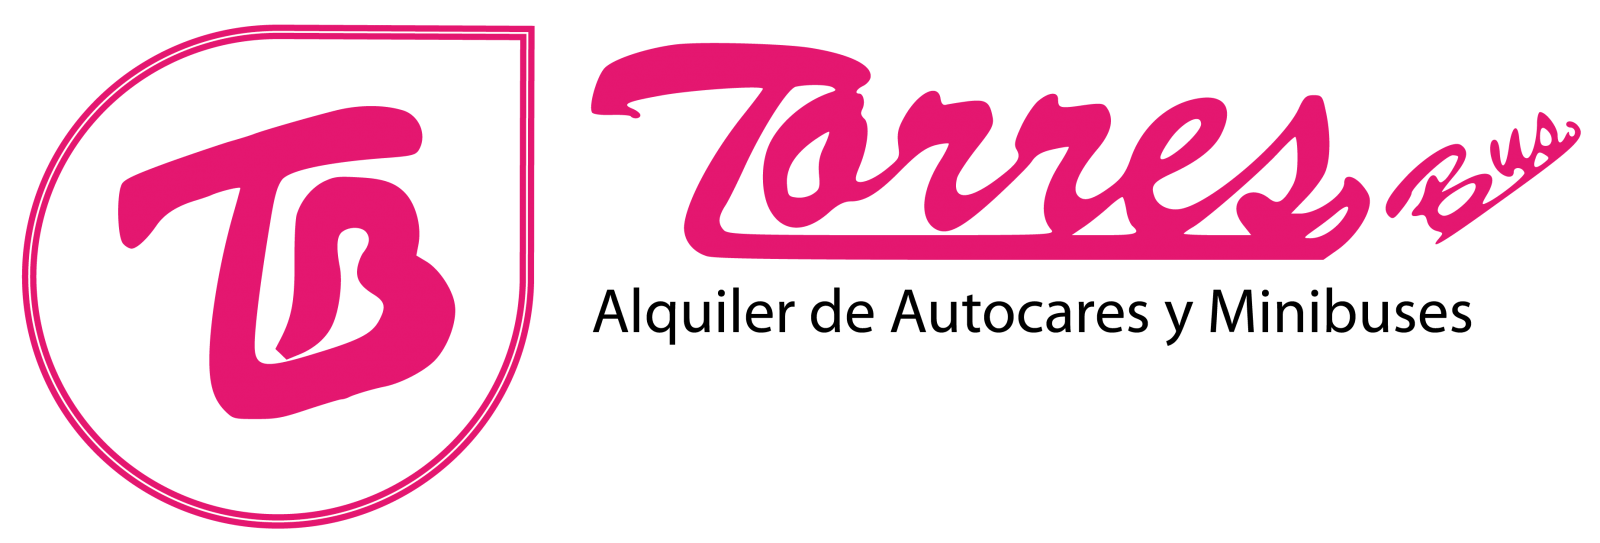 Autocares TORRES BUS S.L. logo